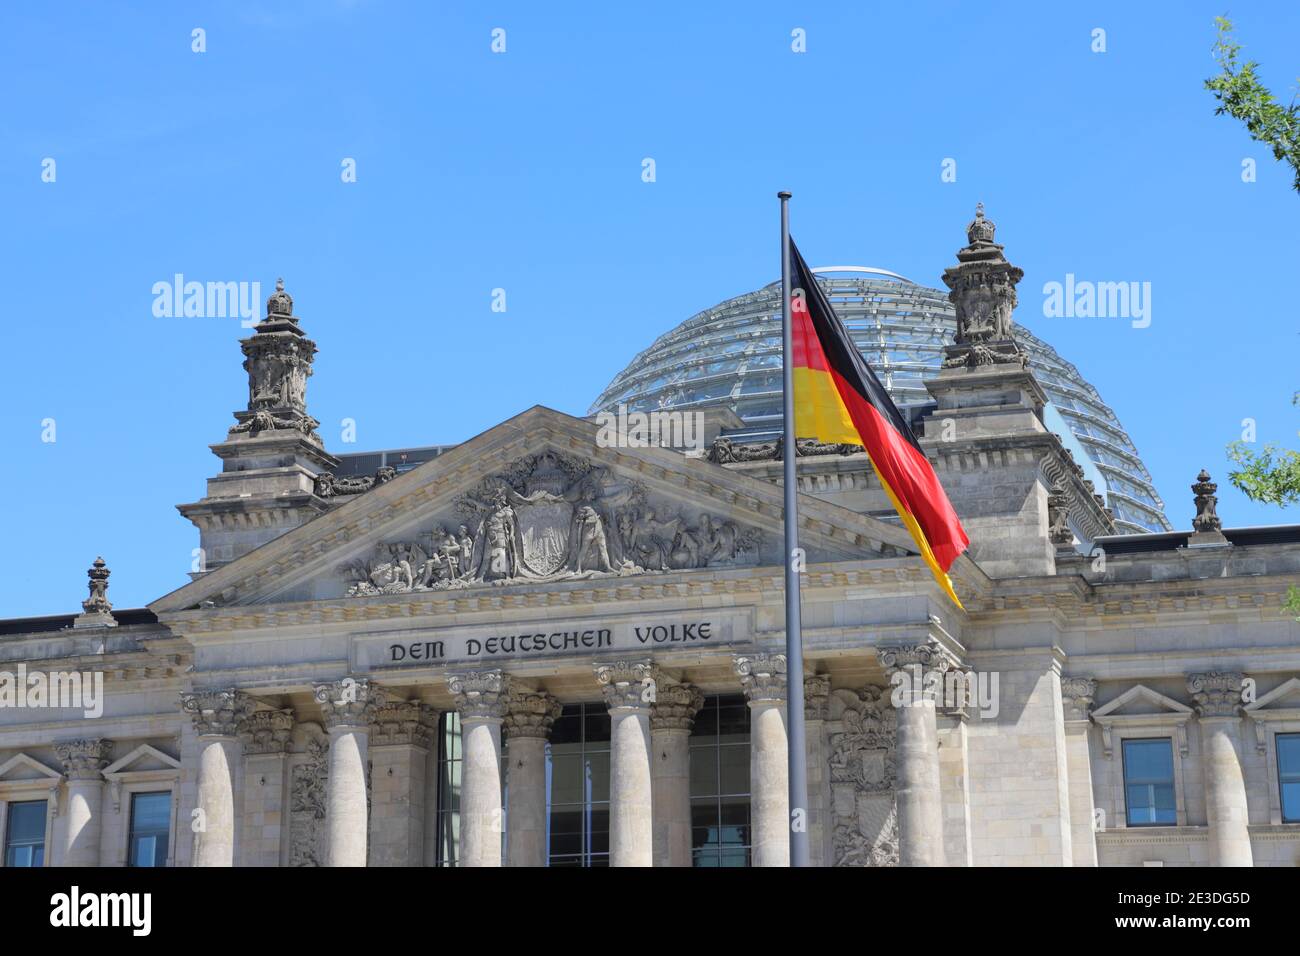 GERMANIA, BERLINO, PLATZ DER REPUBLIK - 08 GIUGNO 2018: Cupola di Glas, iscrizione 'DEM DEUTSCHEN VOLKE' e bandiera tedesca nell'edificio Reichstag di Berlino Foto Stock